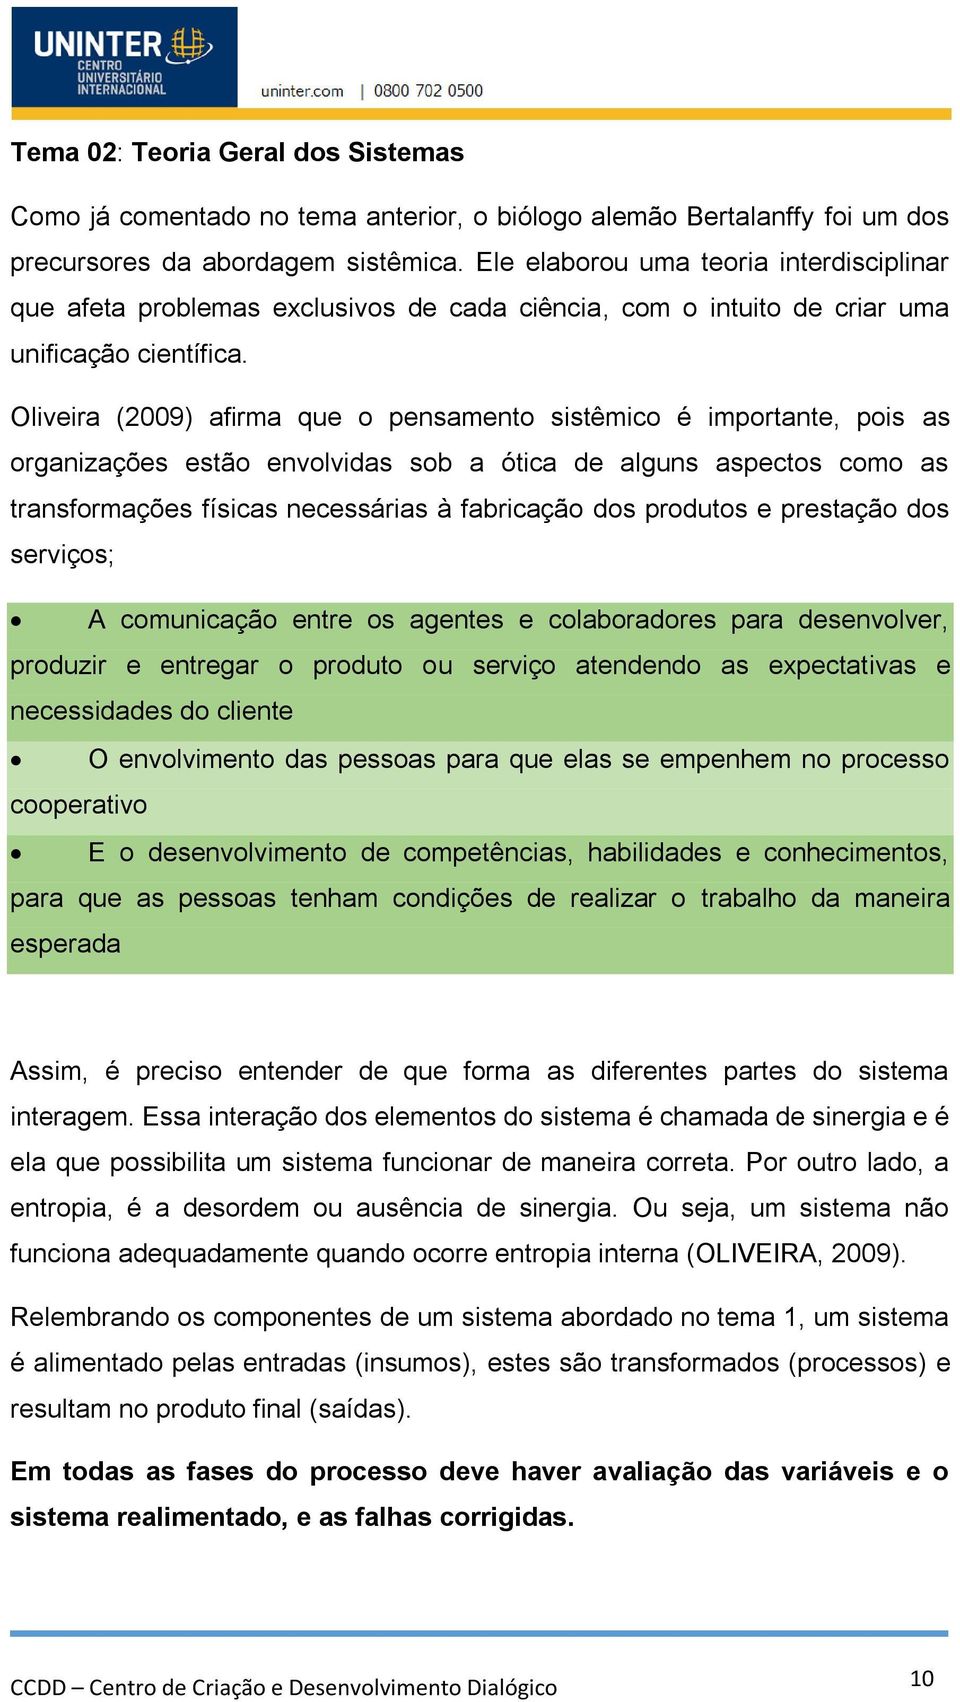 Oliveira (2009) afirma que o pensamento sistêmico é importante, pois as organizações estão envolvidas sob a ótica de alguns aspectos como as transformações físicas necessárias à fabricação dos